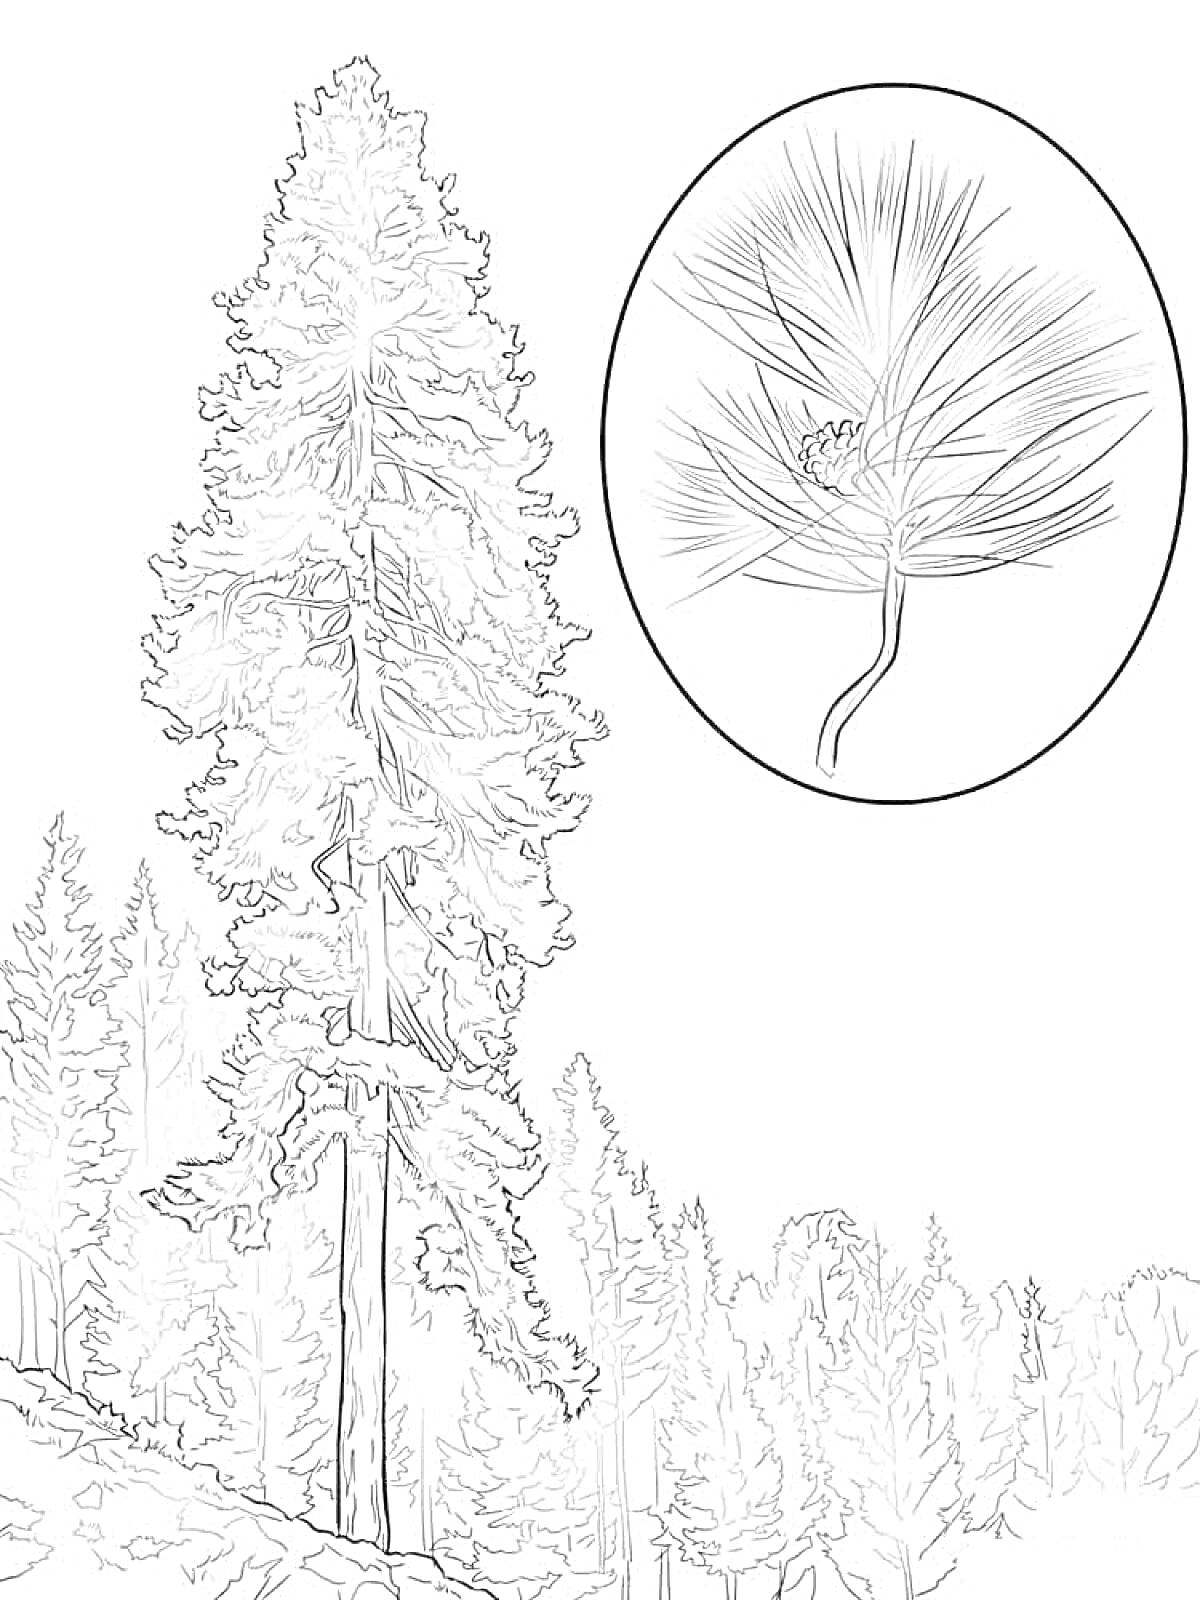 Высокое дерево на склоне с видом на лес и увеличенным изображением хвои